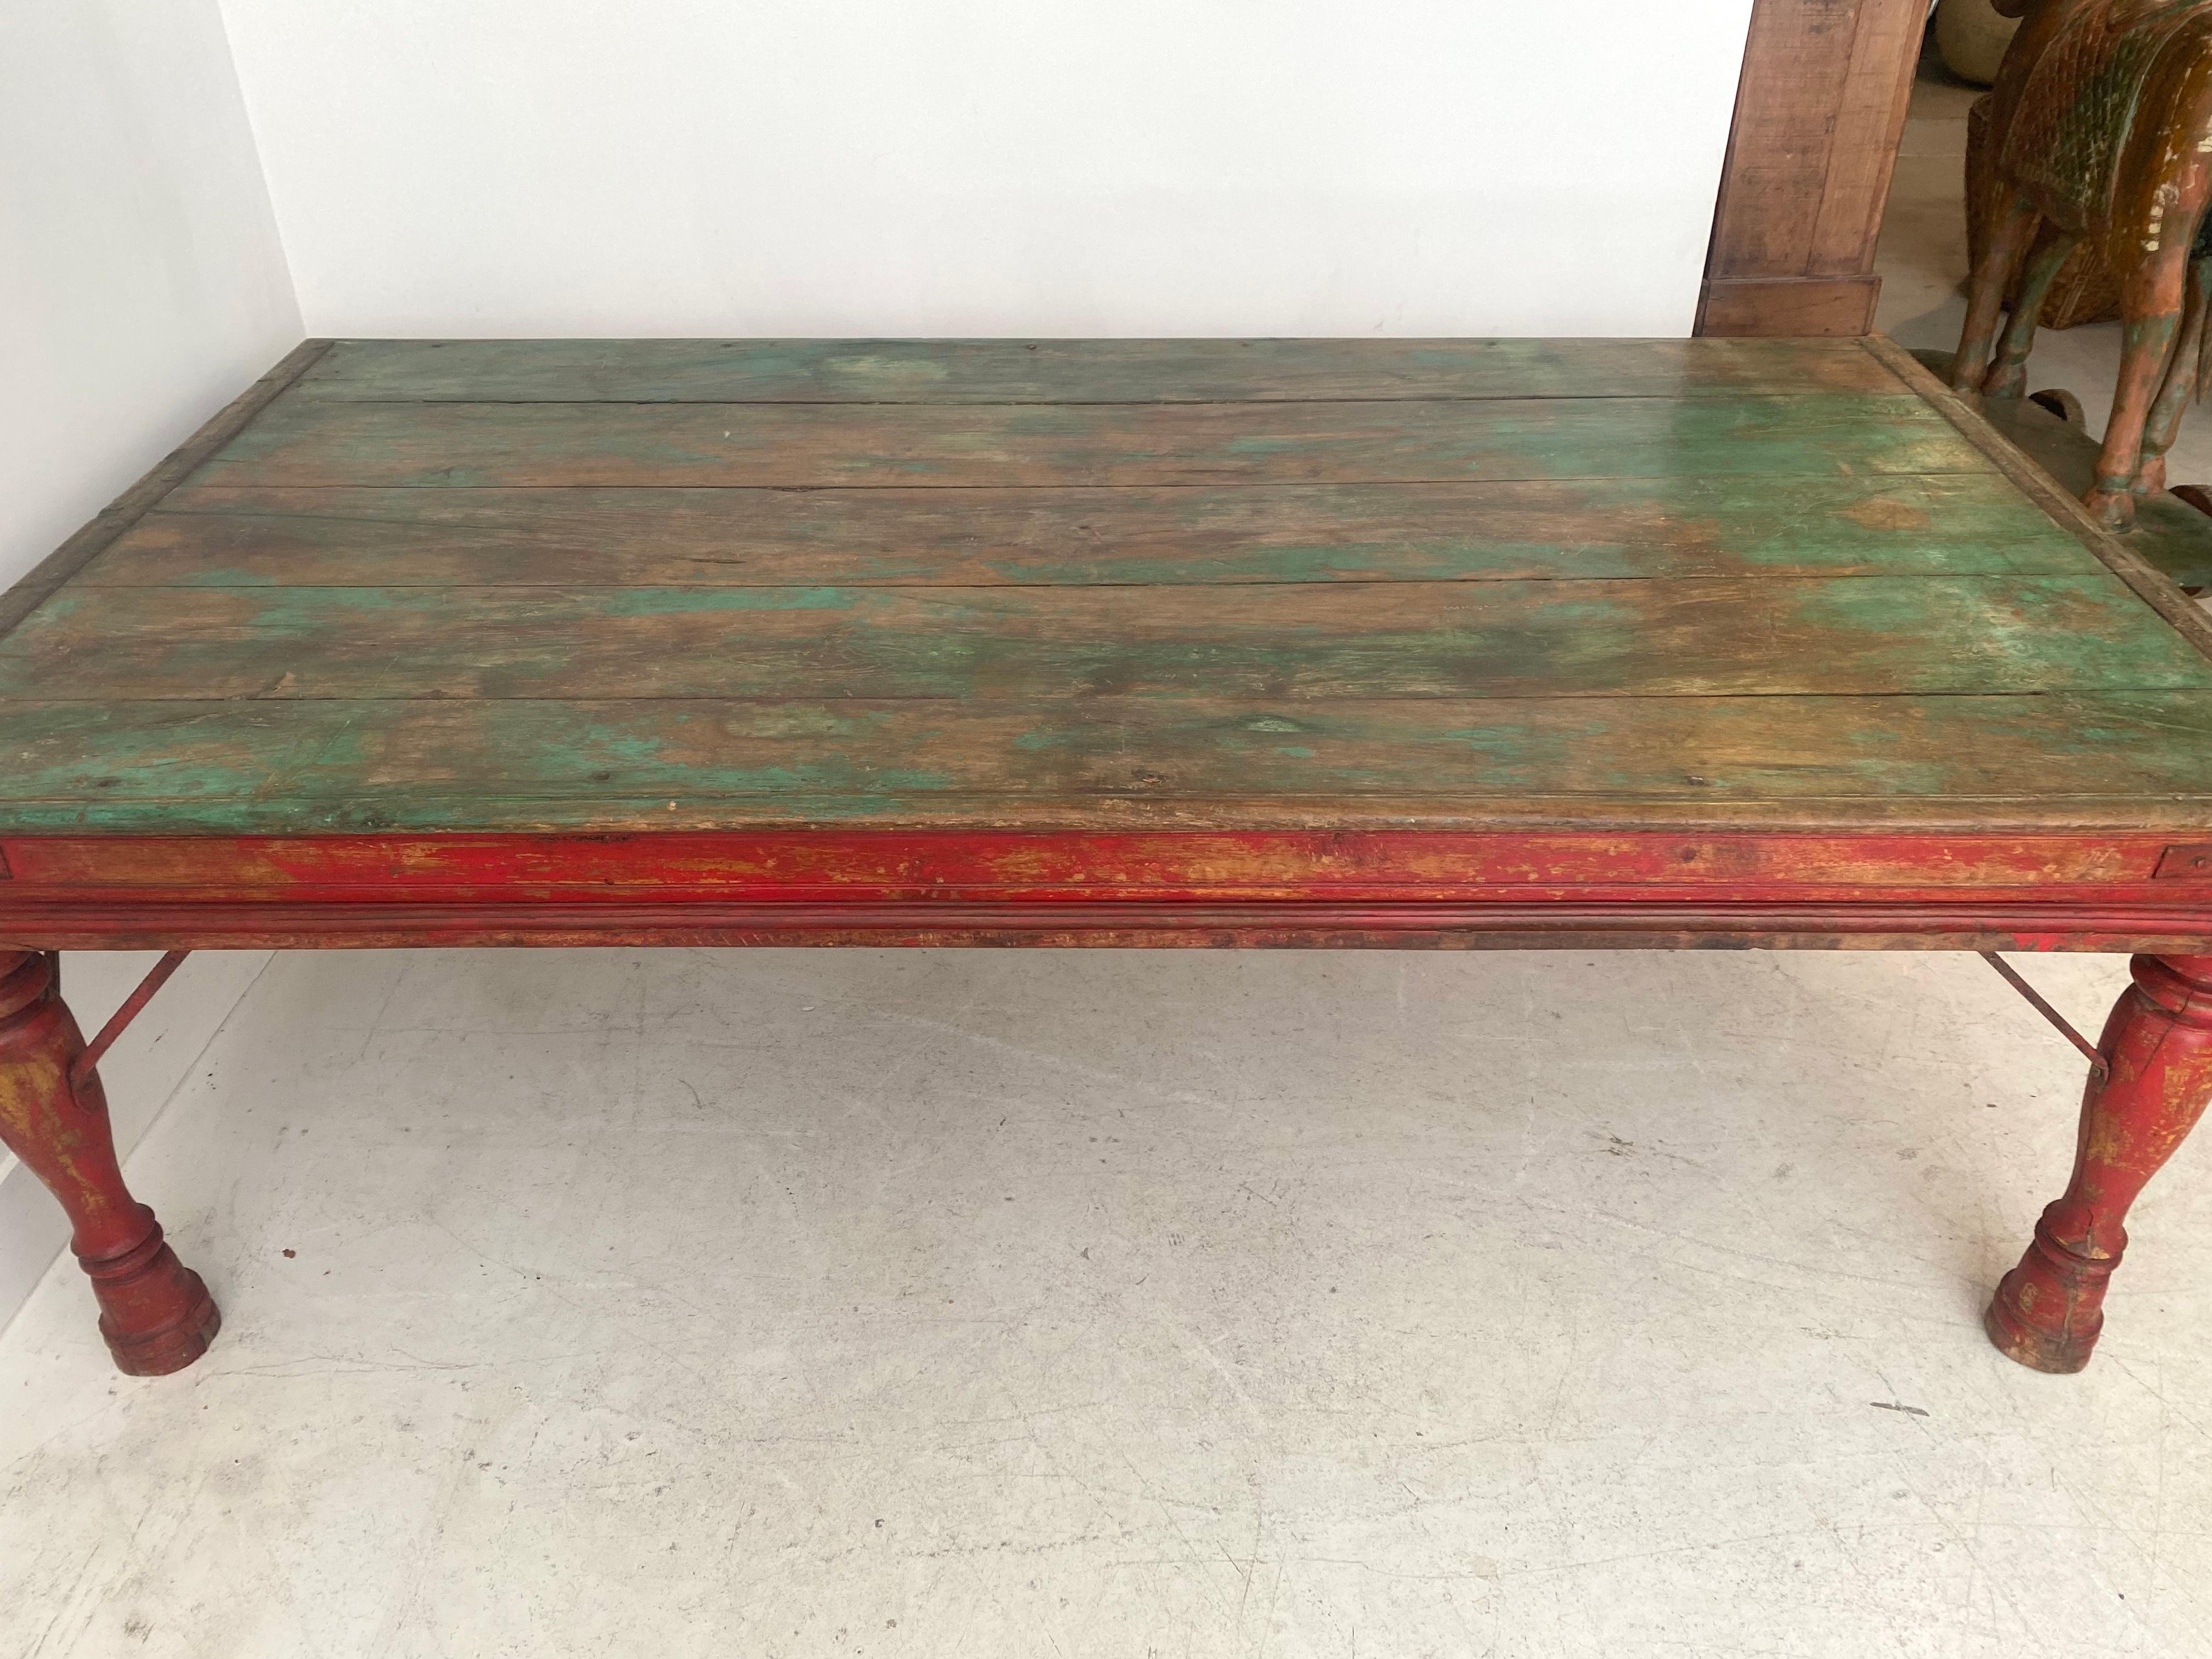 Table basse traditionnelle indienne peinte à la main en rouge et vert.
Très belle pièce en teck.
Vous pouvez le vivre à l'extérieur. 
Excellent état.
Provenance : Rajasthan 